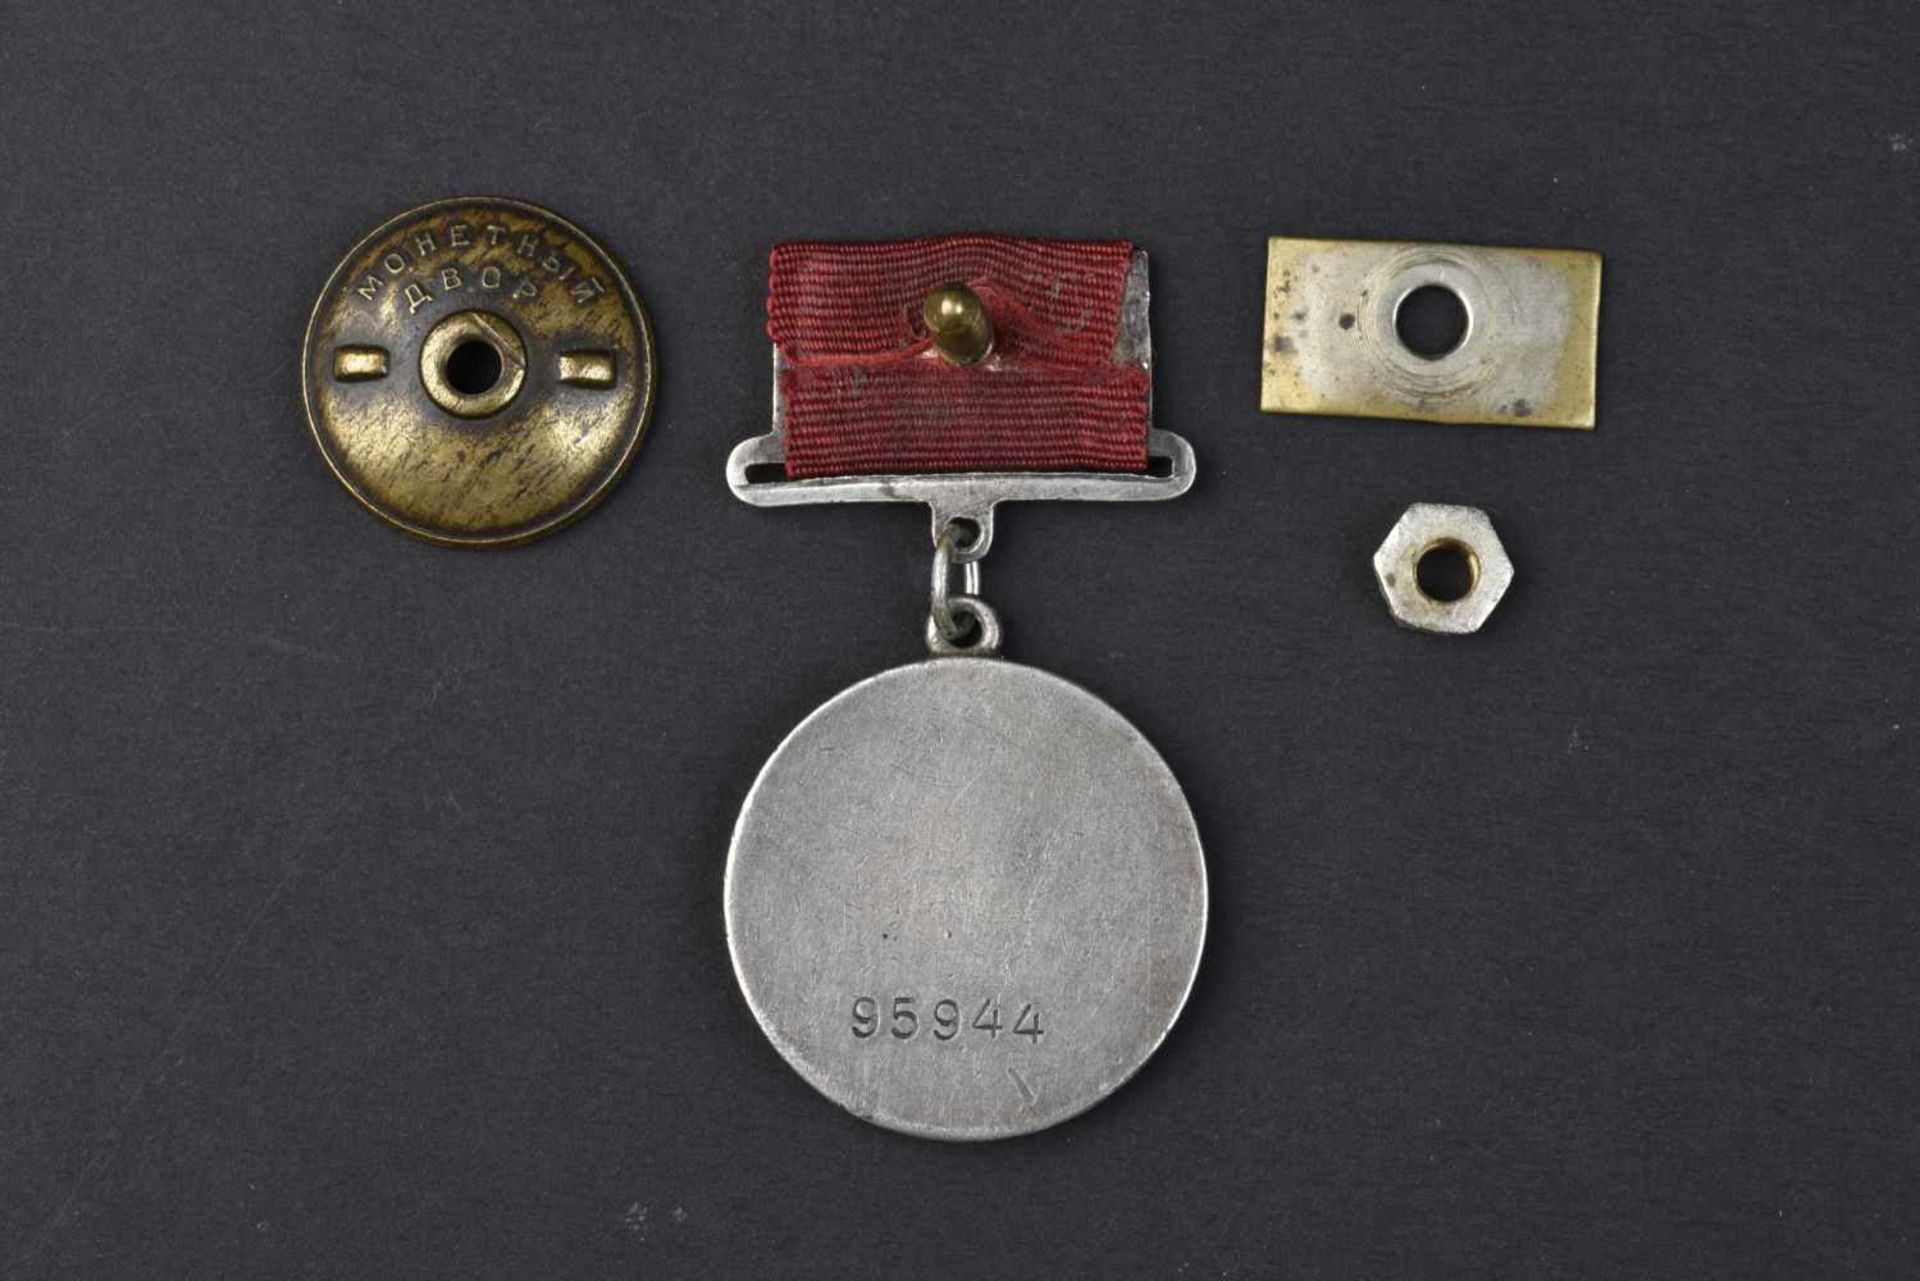 Médaille pour le mérite au combat, type 1, n° 95944 attribuée le 22 septembre 1942 au Major AMELIN - Bild 2 aus 3